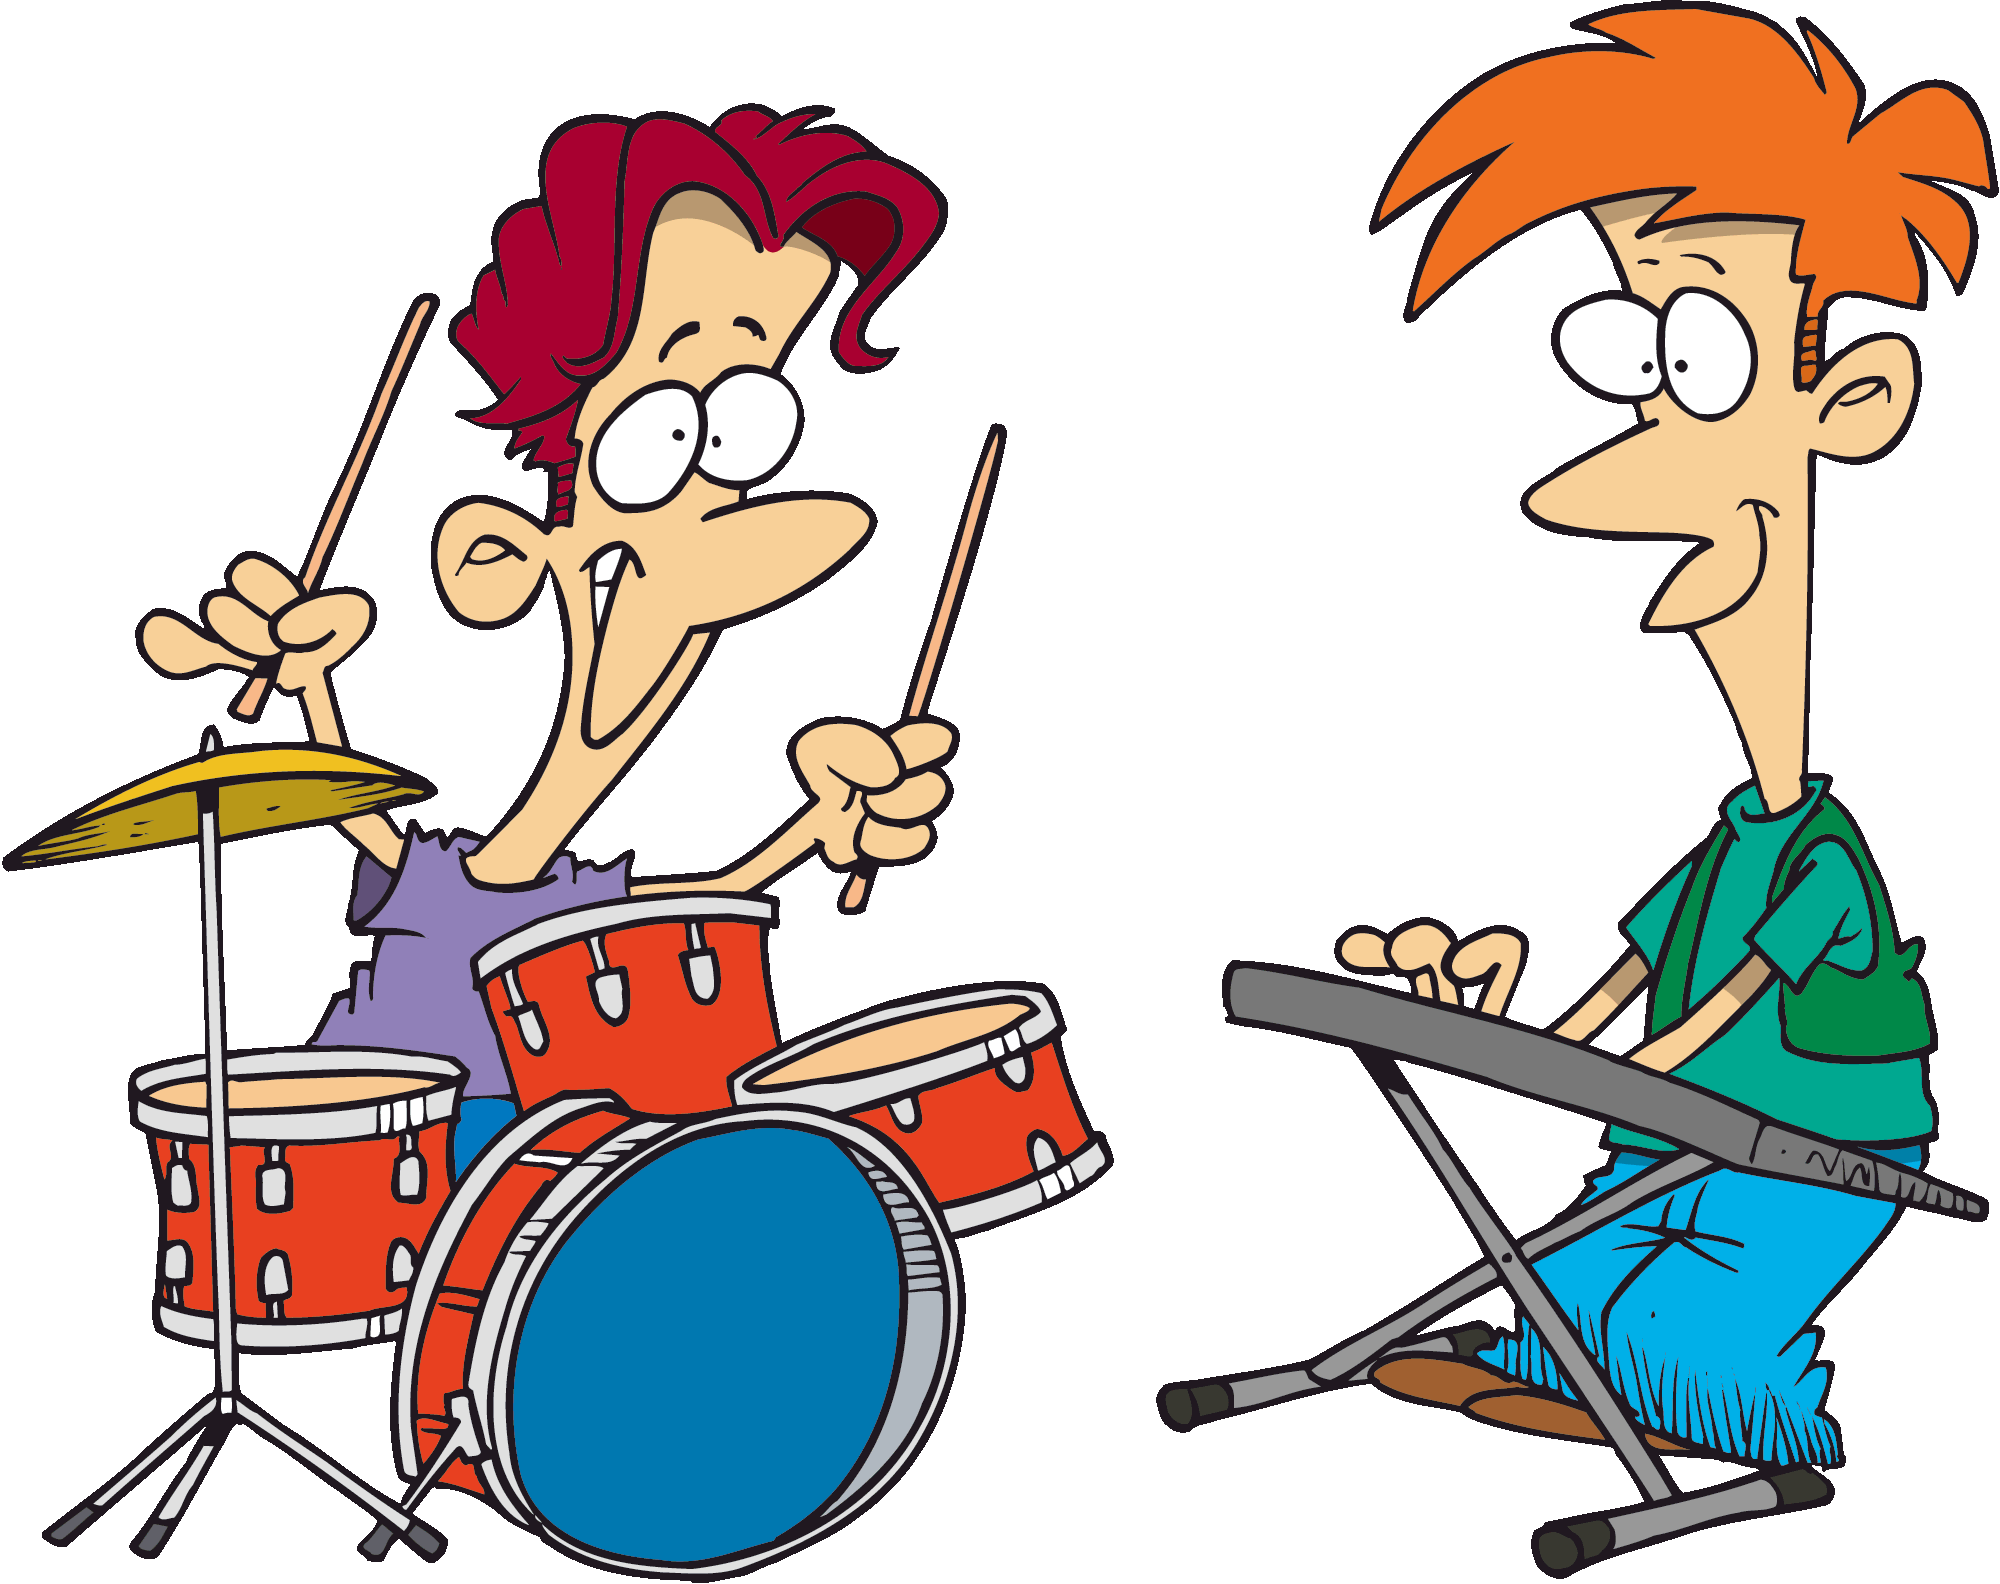 drum clipart rock drums